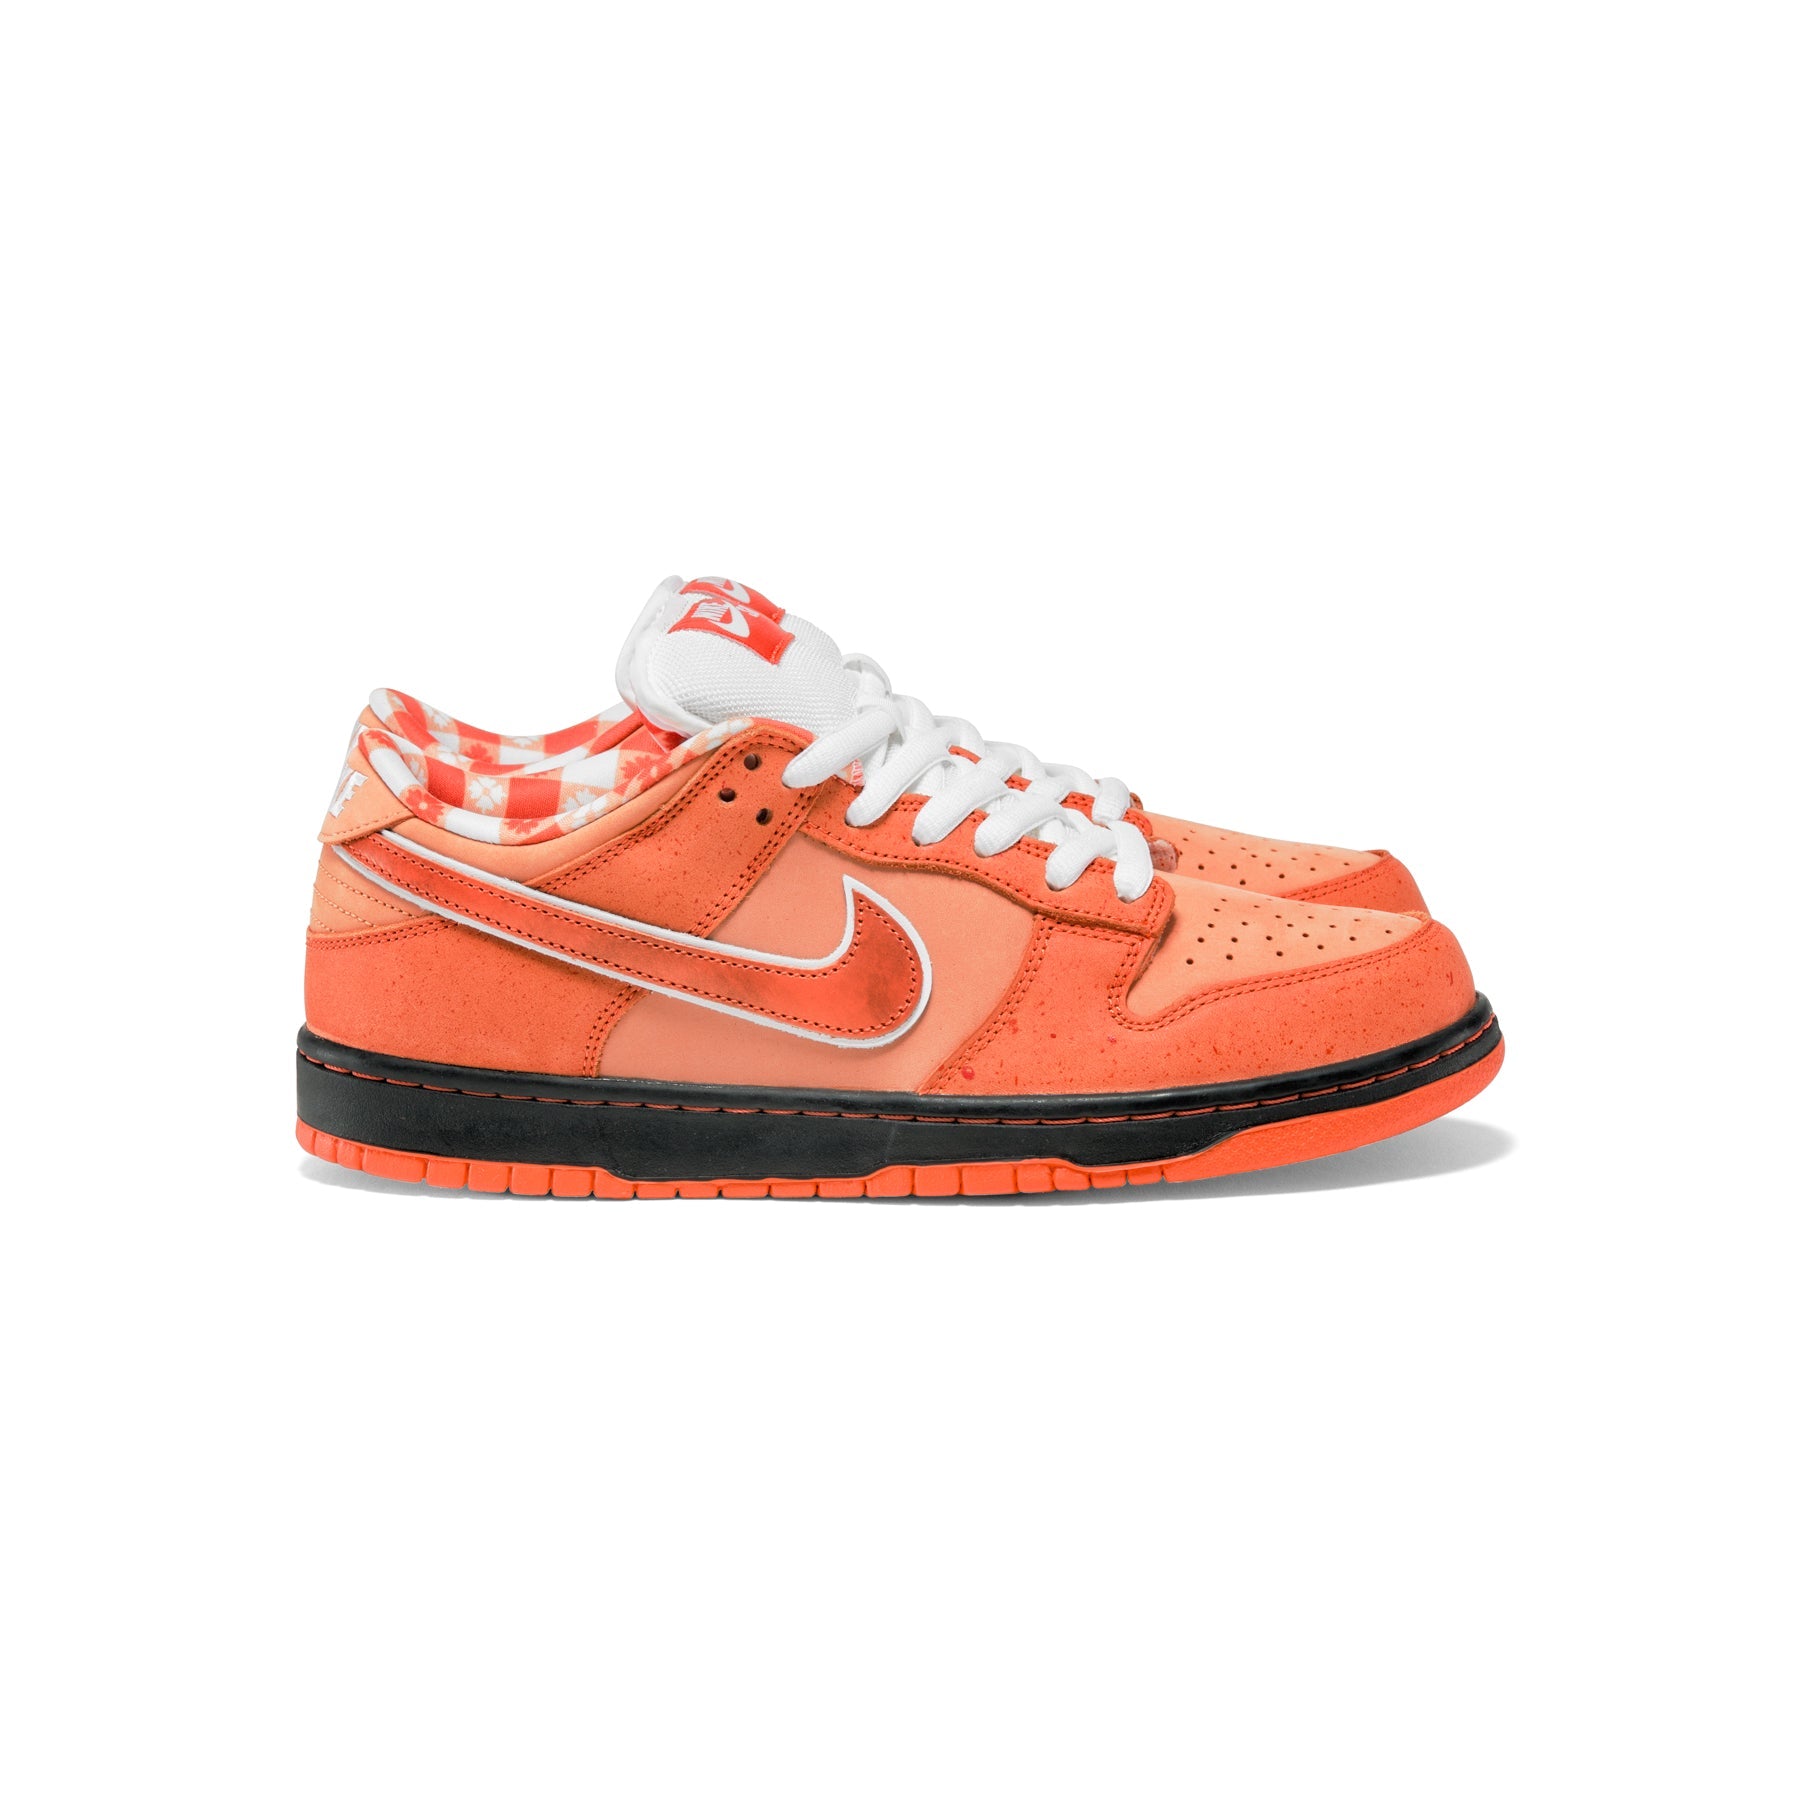 Gepensioneerd Toepassen Ontwikkelen Concepts x Nike SB Dunk Low (Orange Frost/Electro Orange/White) Online